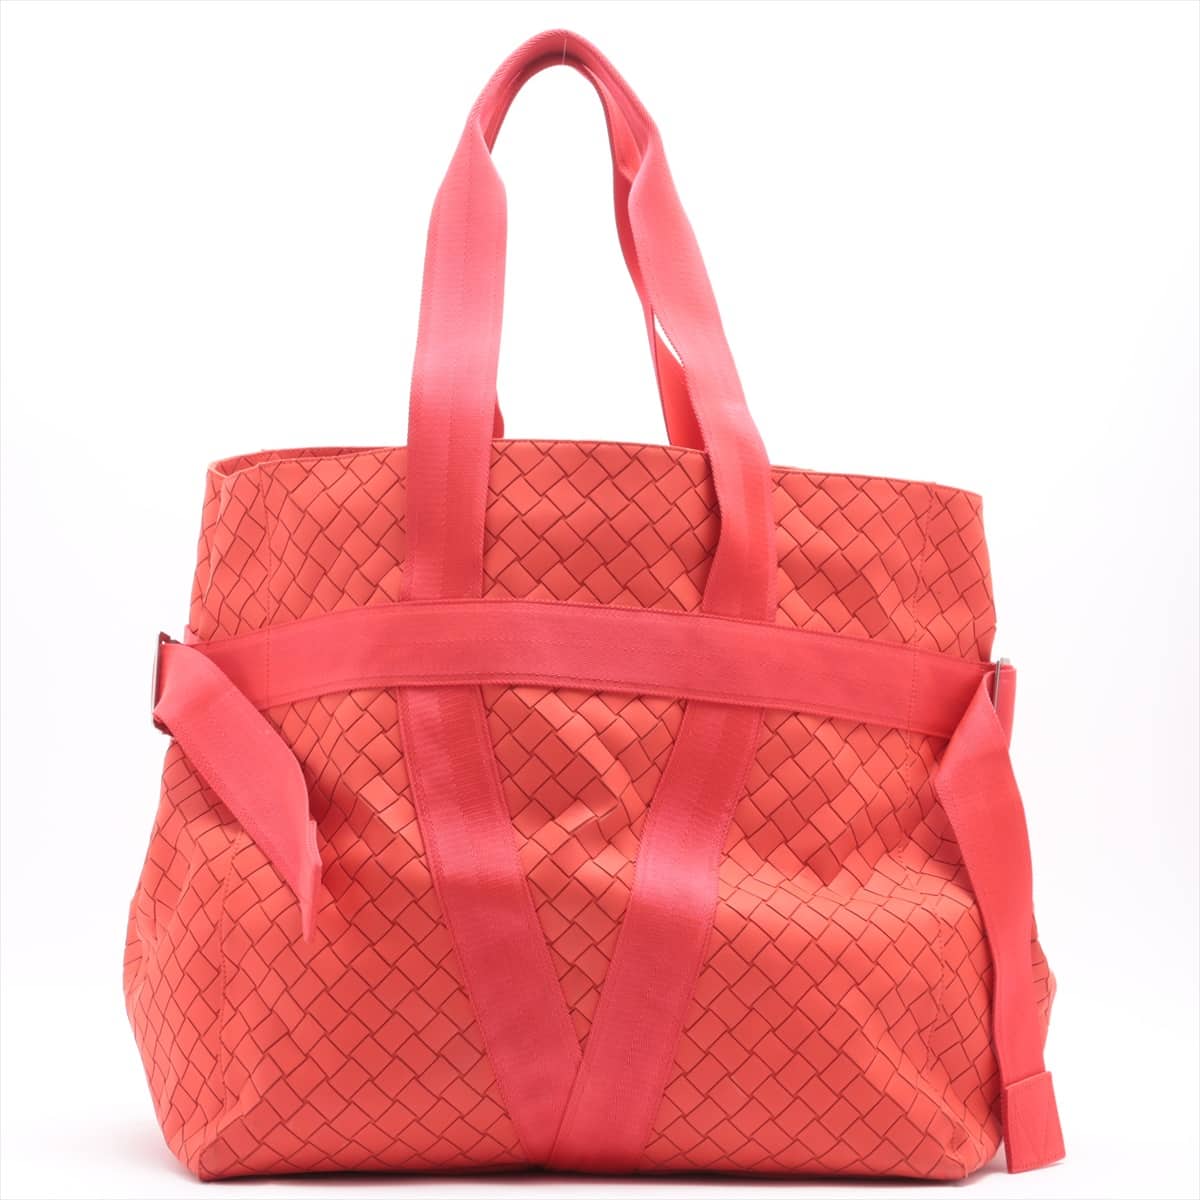 Bottega Veneta Intrecciato Nylon & Leather Tote bag Red with pouch